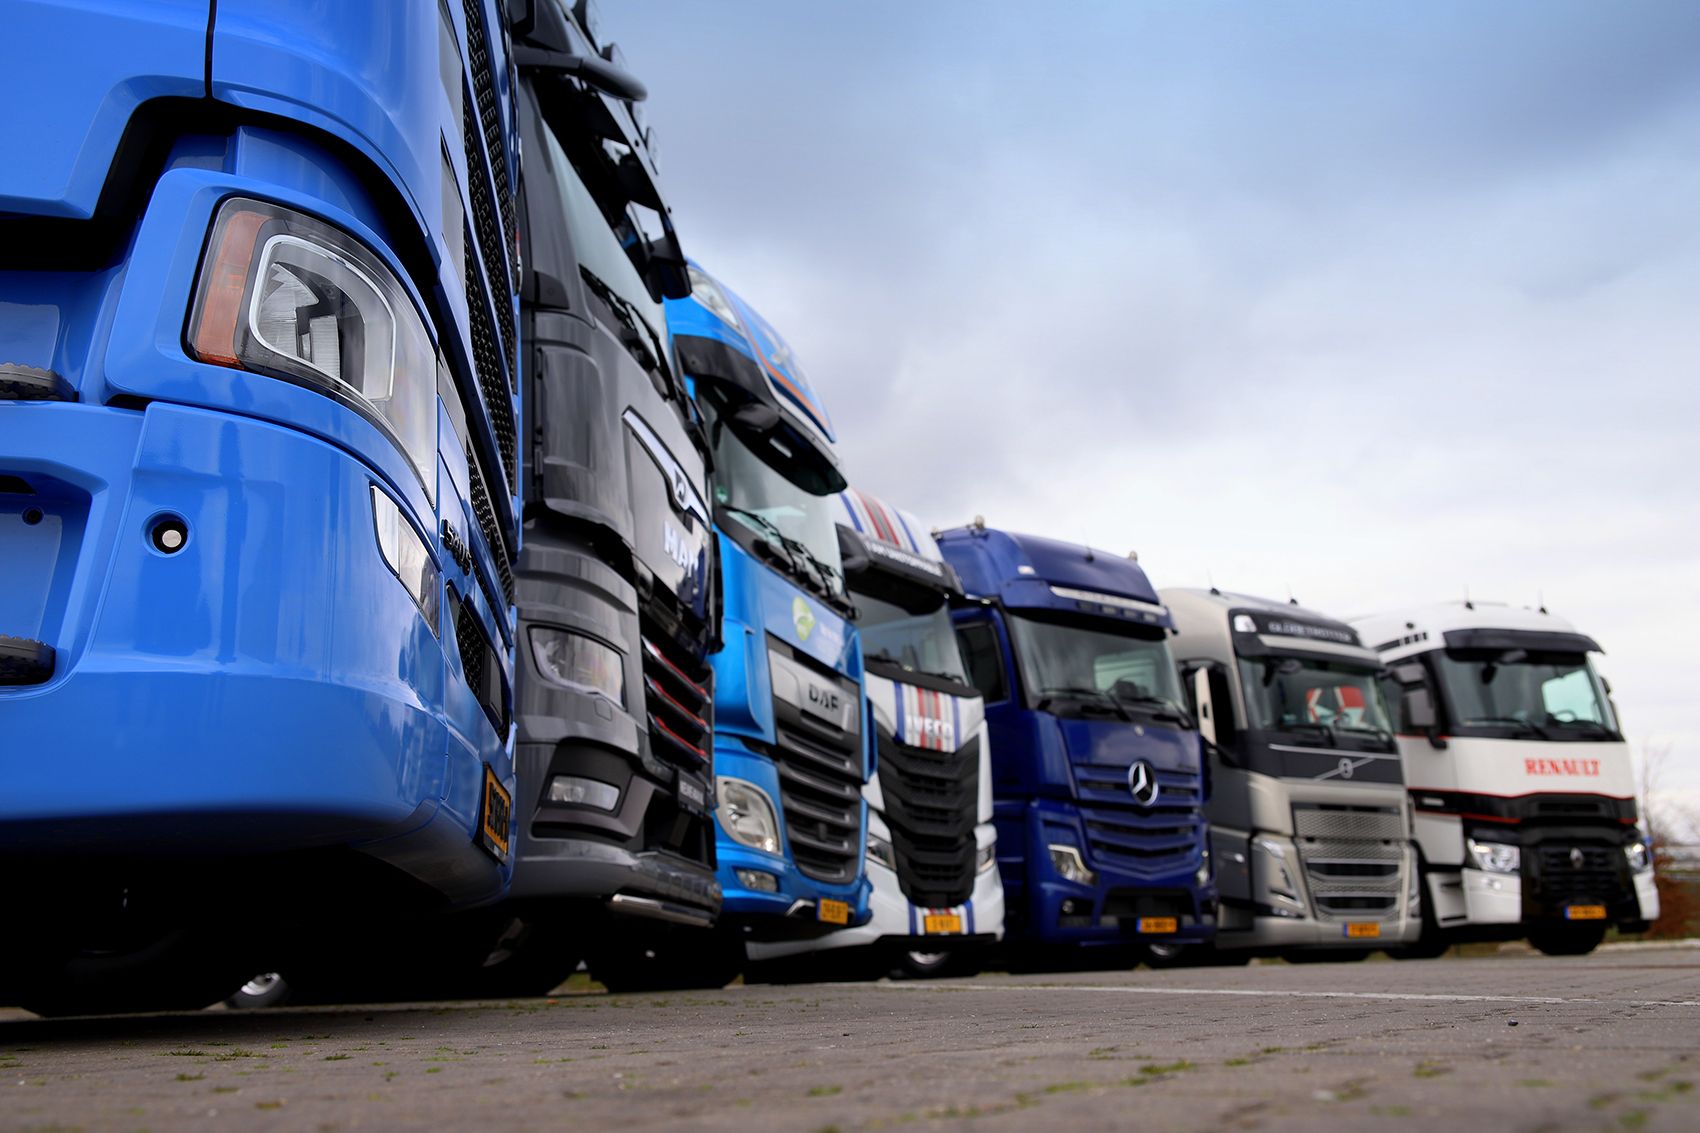 主打猛狮元素 曼恩商用车英国交付第15万辆卡车 重型车网传播卡车文化 关注卡车生活